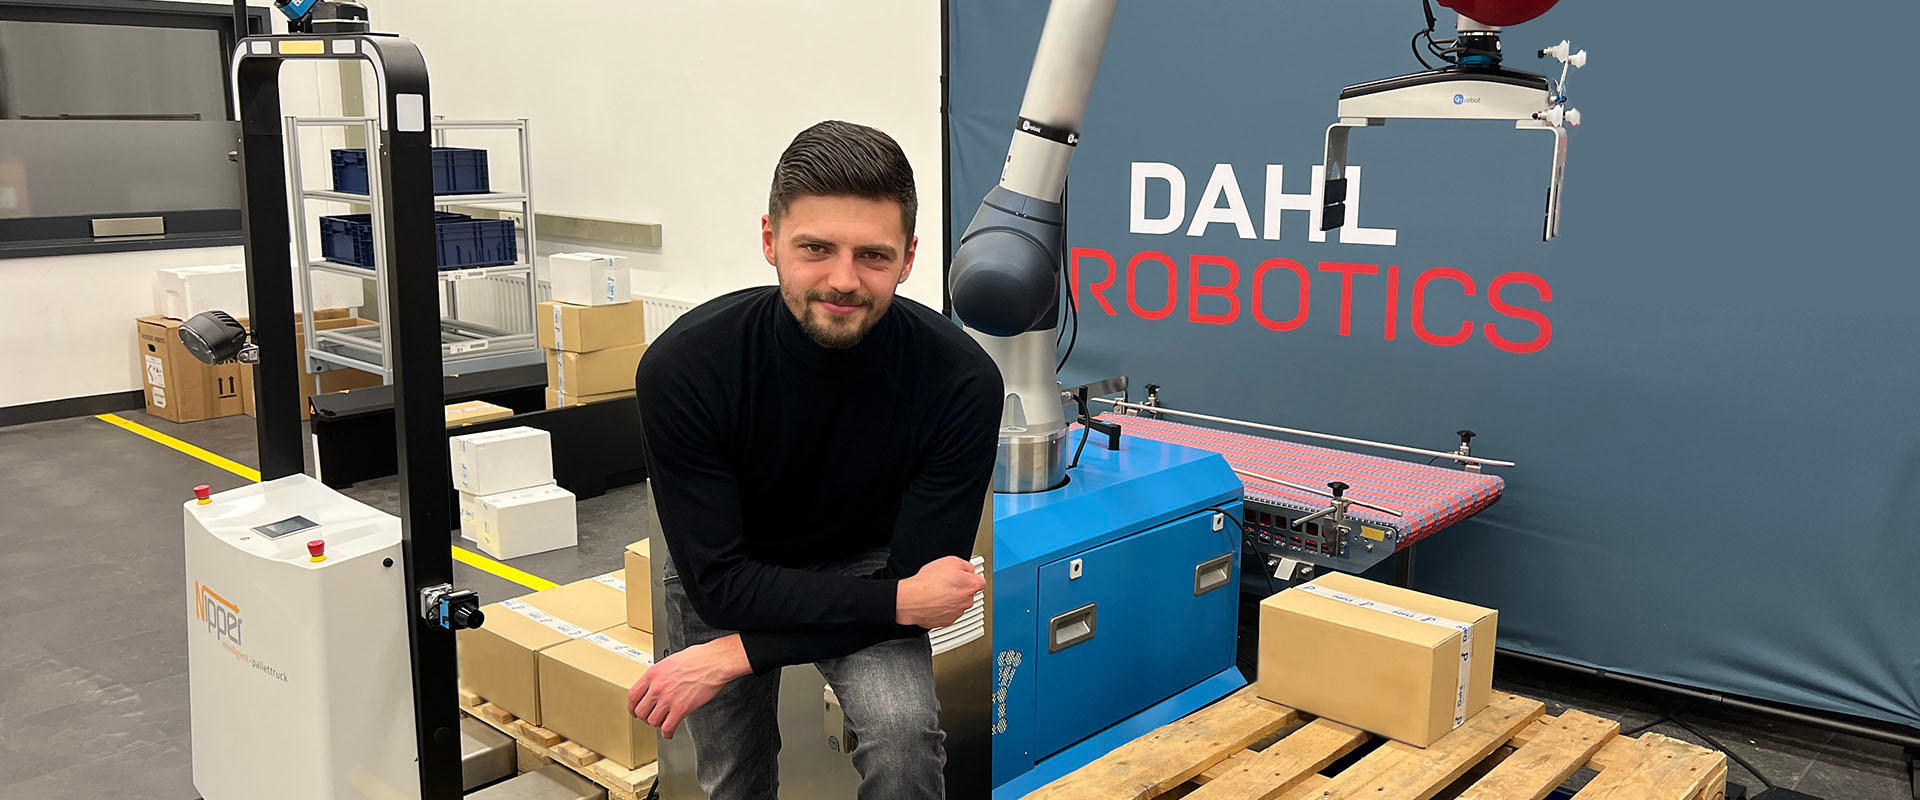 Jetzt eine Karriere bei mR MOBILE ROBOTS in Meinerzhagen starten: Aktuelle Stellenausschreibungen im Bereich Intralogistik / mobile Robotik & Produktionslogistik bei Karriere Südwestfalen.